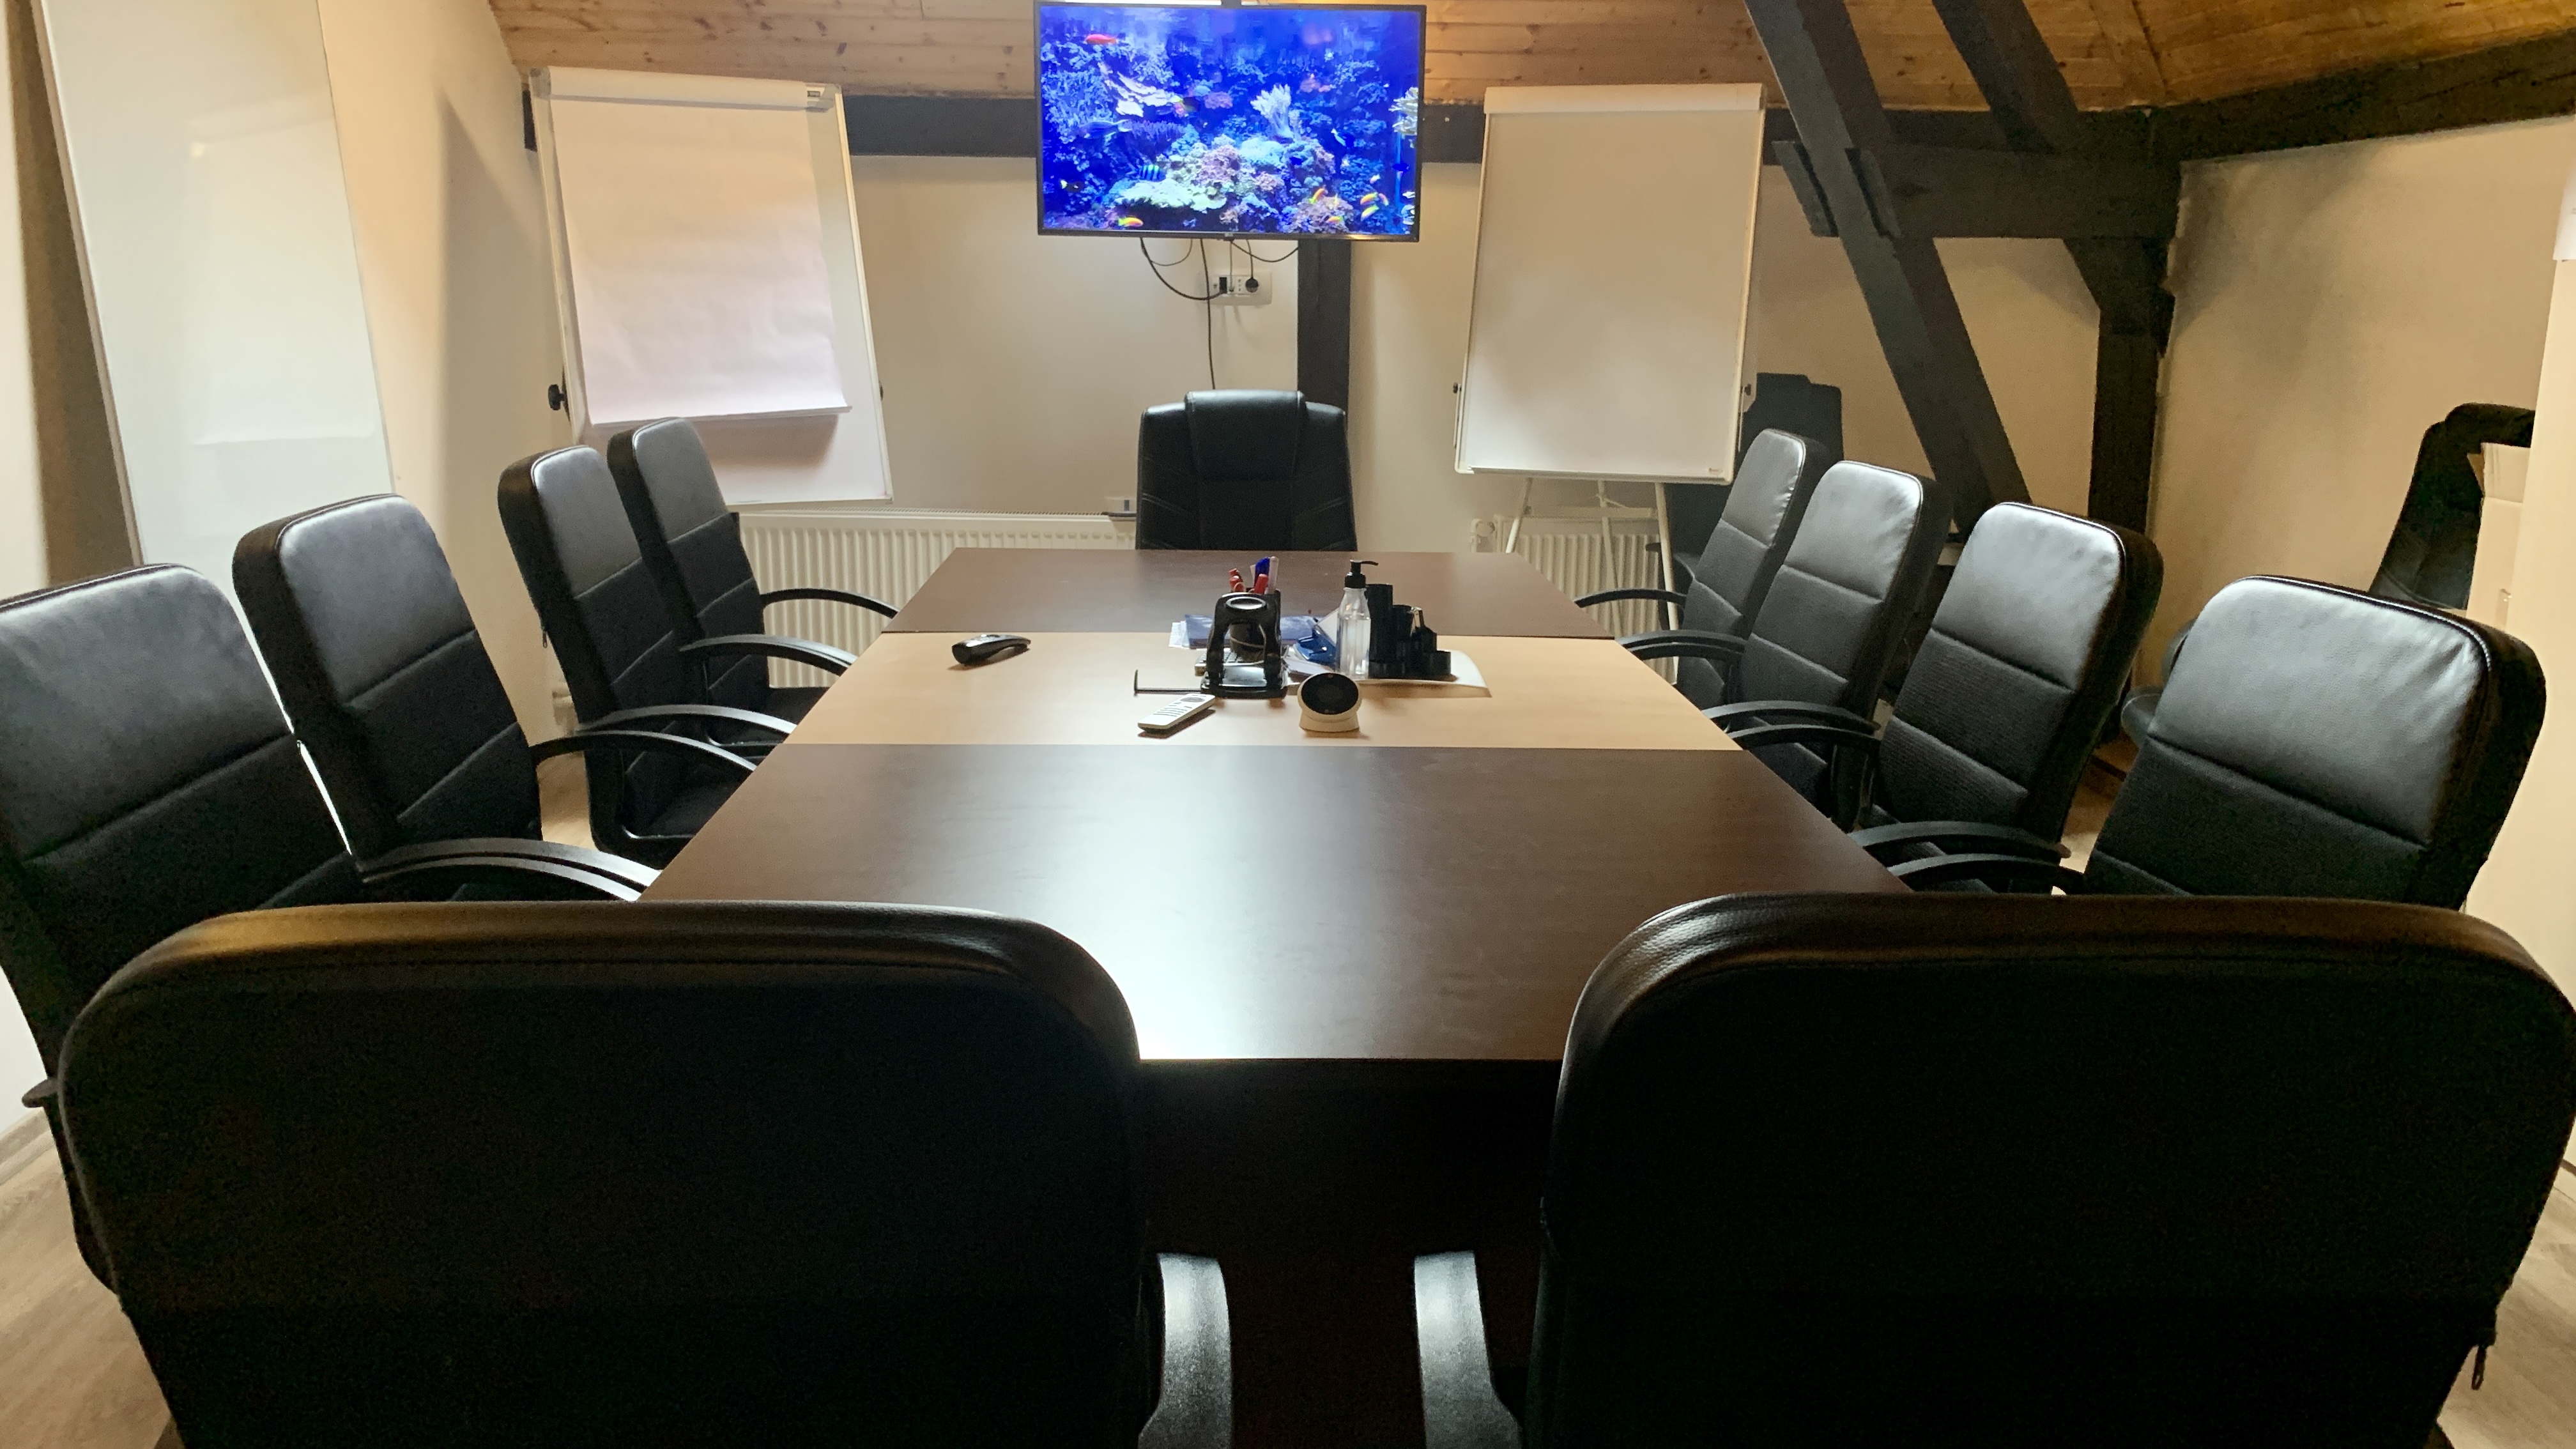 Meeting Room 1